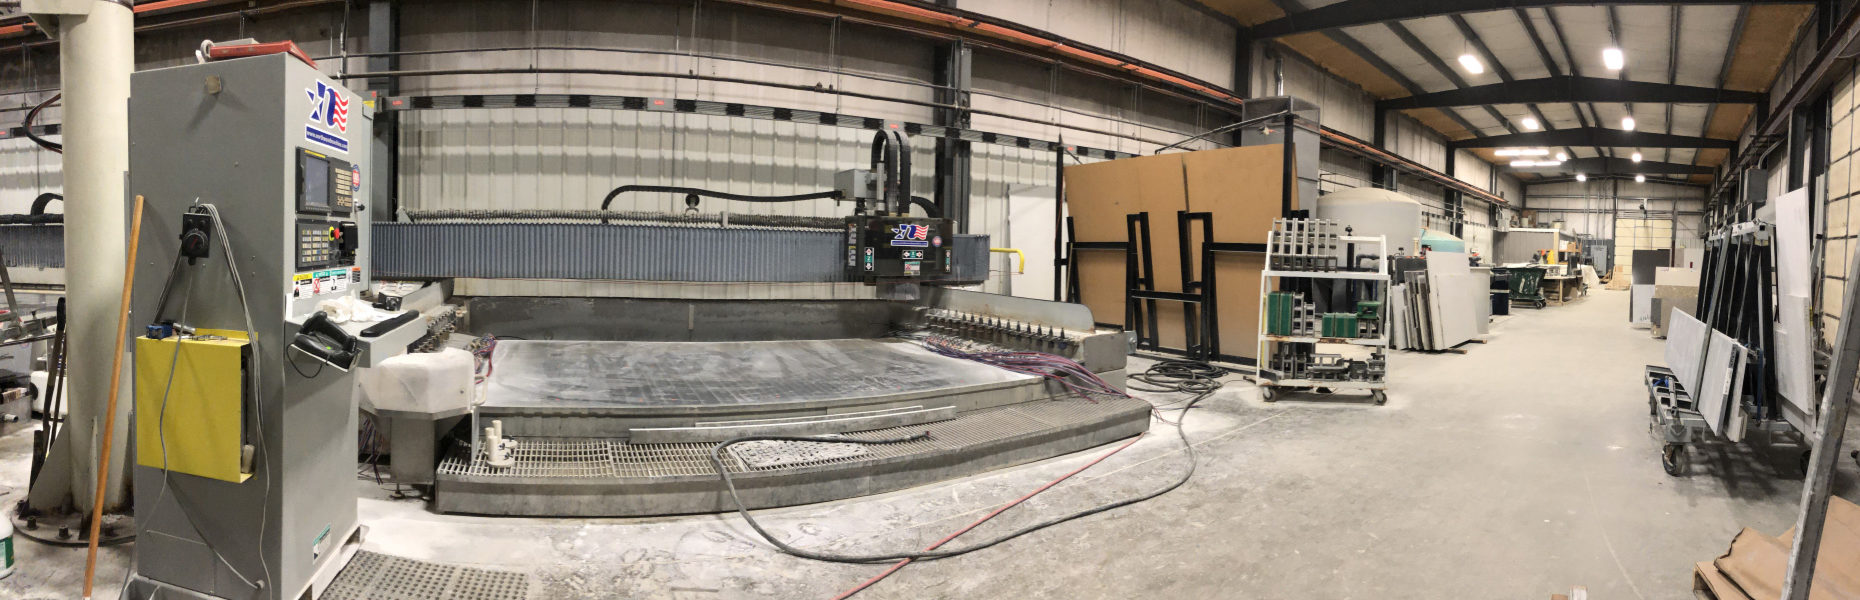 ASST Quartz Fabrication Facility, Corry, PA. 